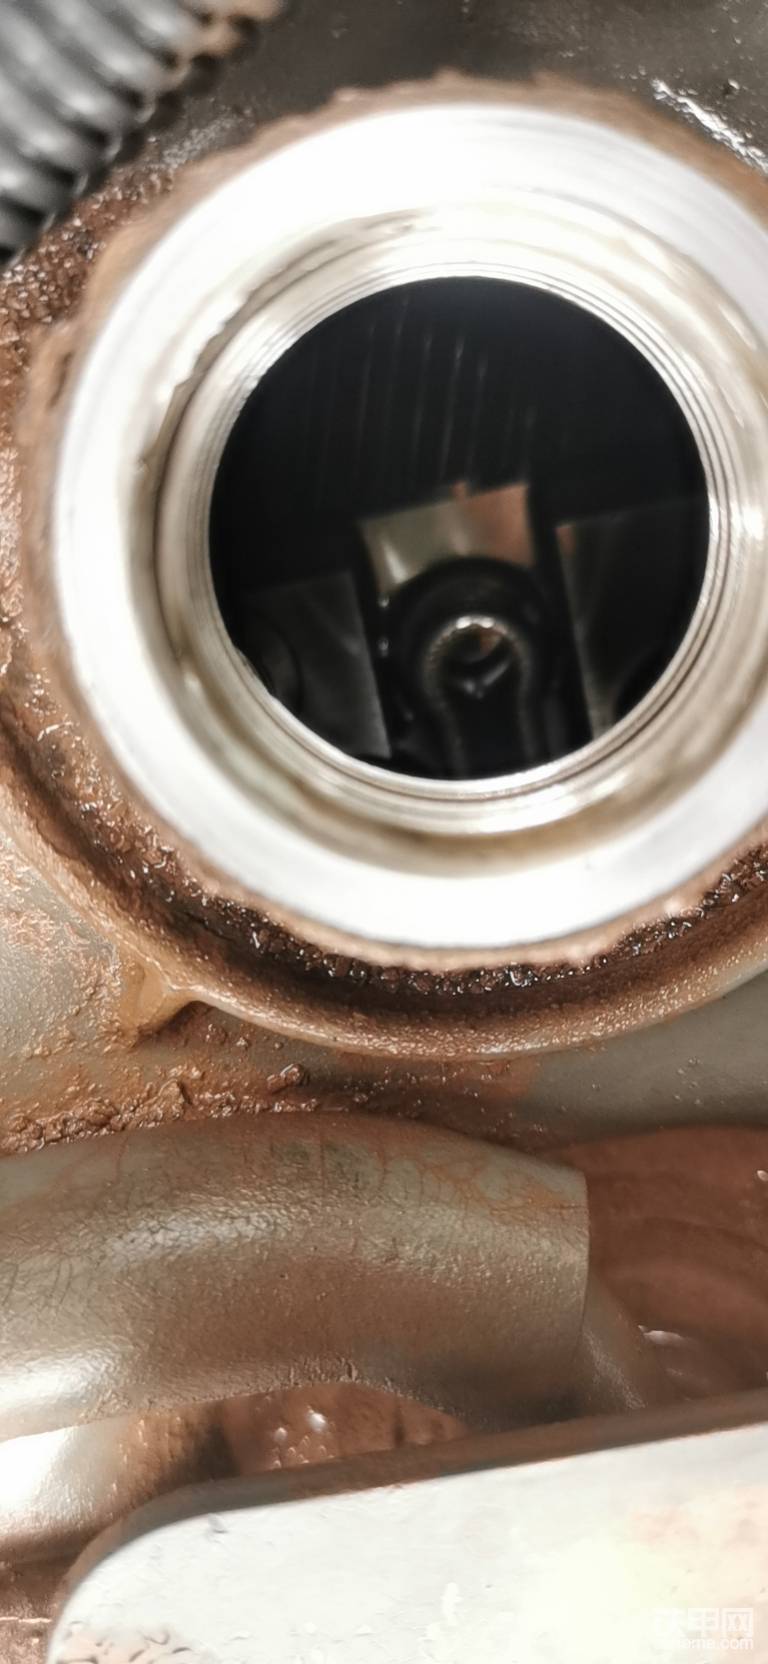 每次我没有加机油之前都要打开机油盖，看看气门室里面有没有油泥，只要有点点油泥，可以证明机油质量不咋样，看样子还是很干净的，